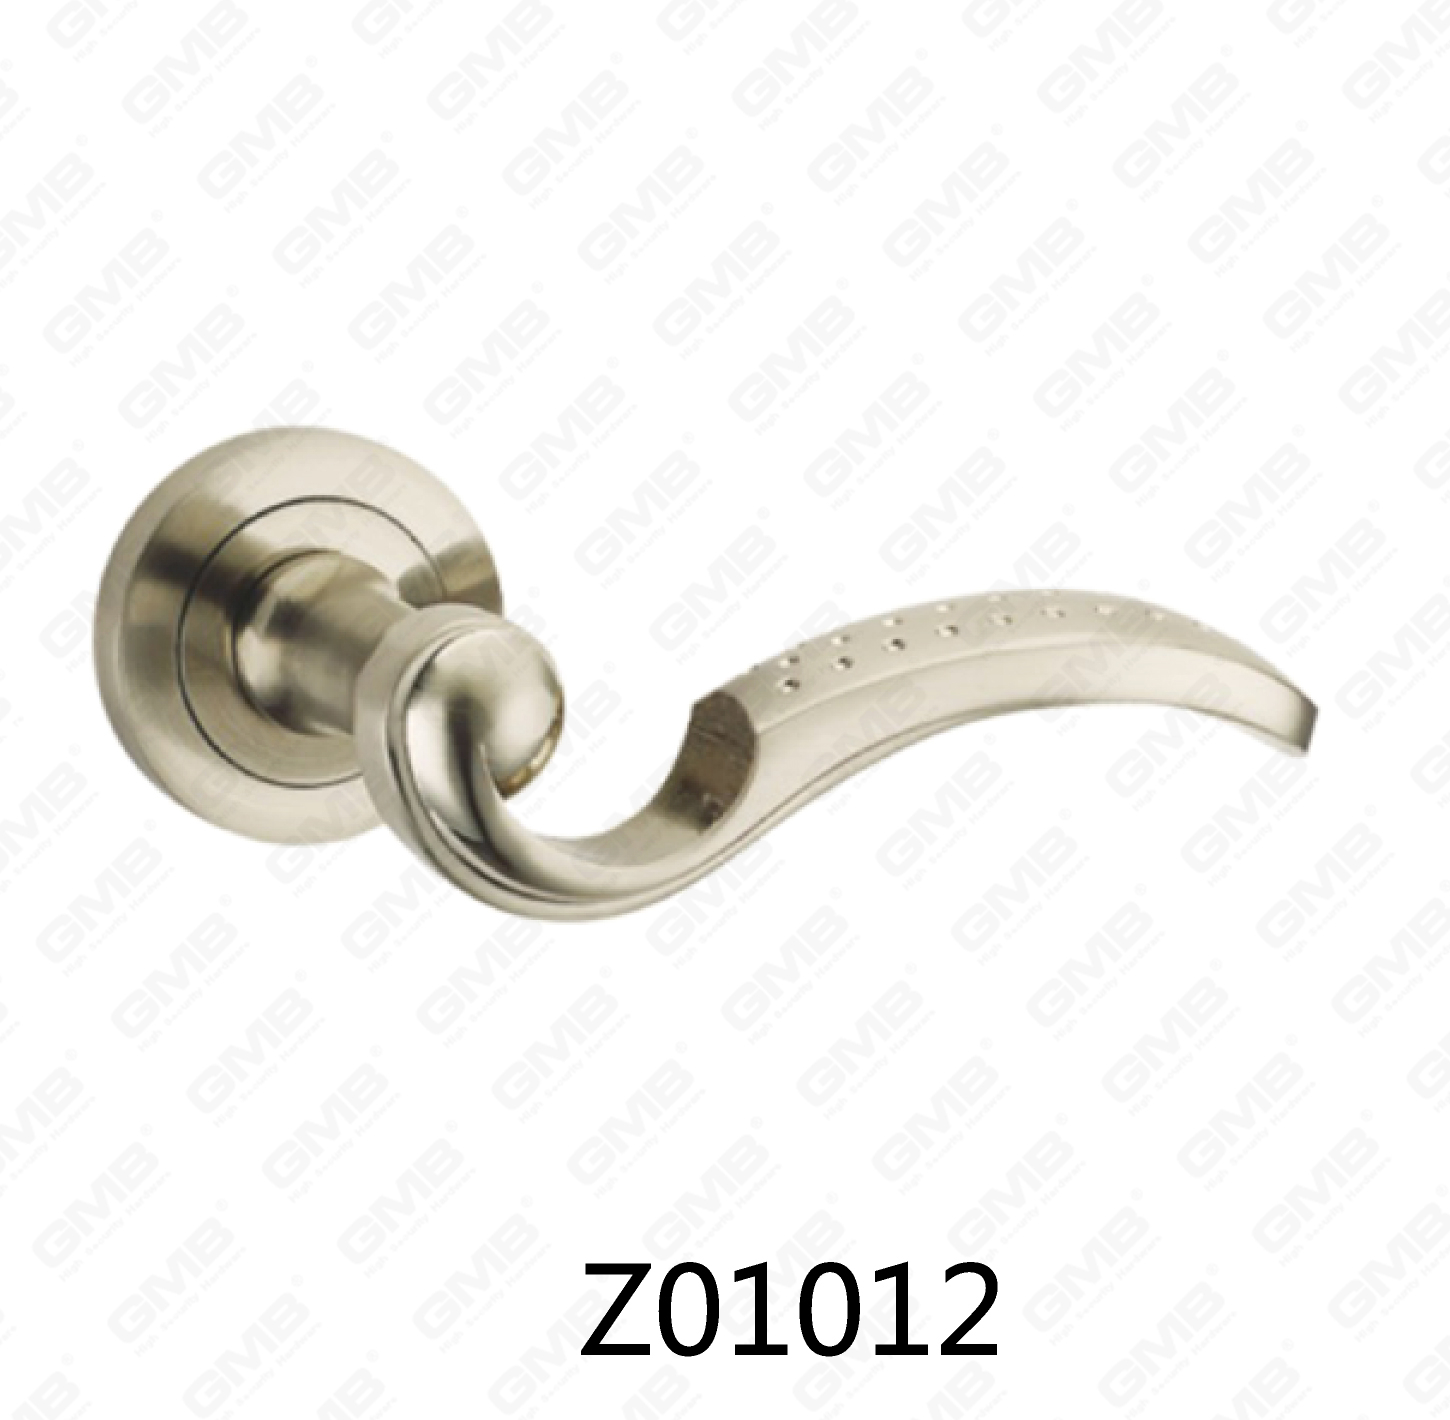 ידית דלת רוזטת אלומיניום מסגסוגת אבץ של Zamak עם רוזטה עגולה (Z01012)